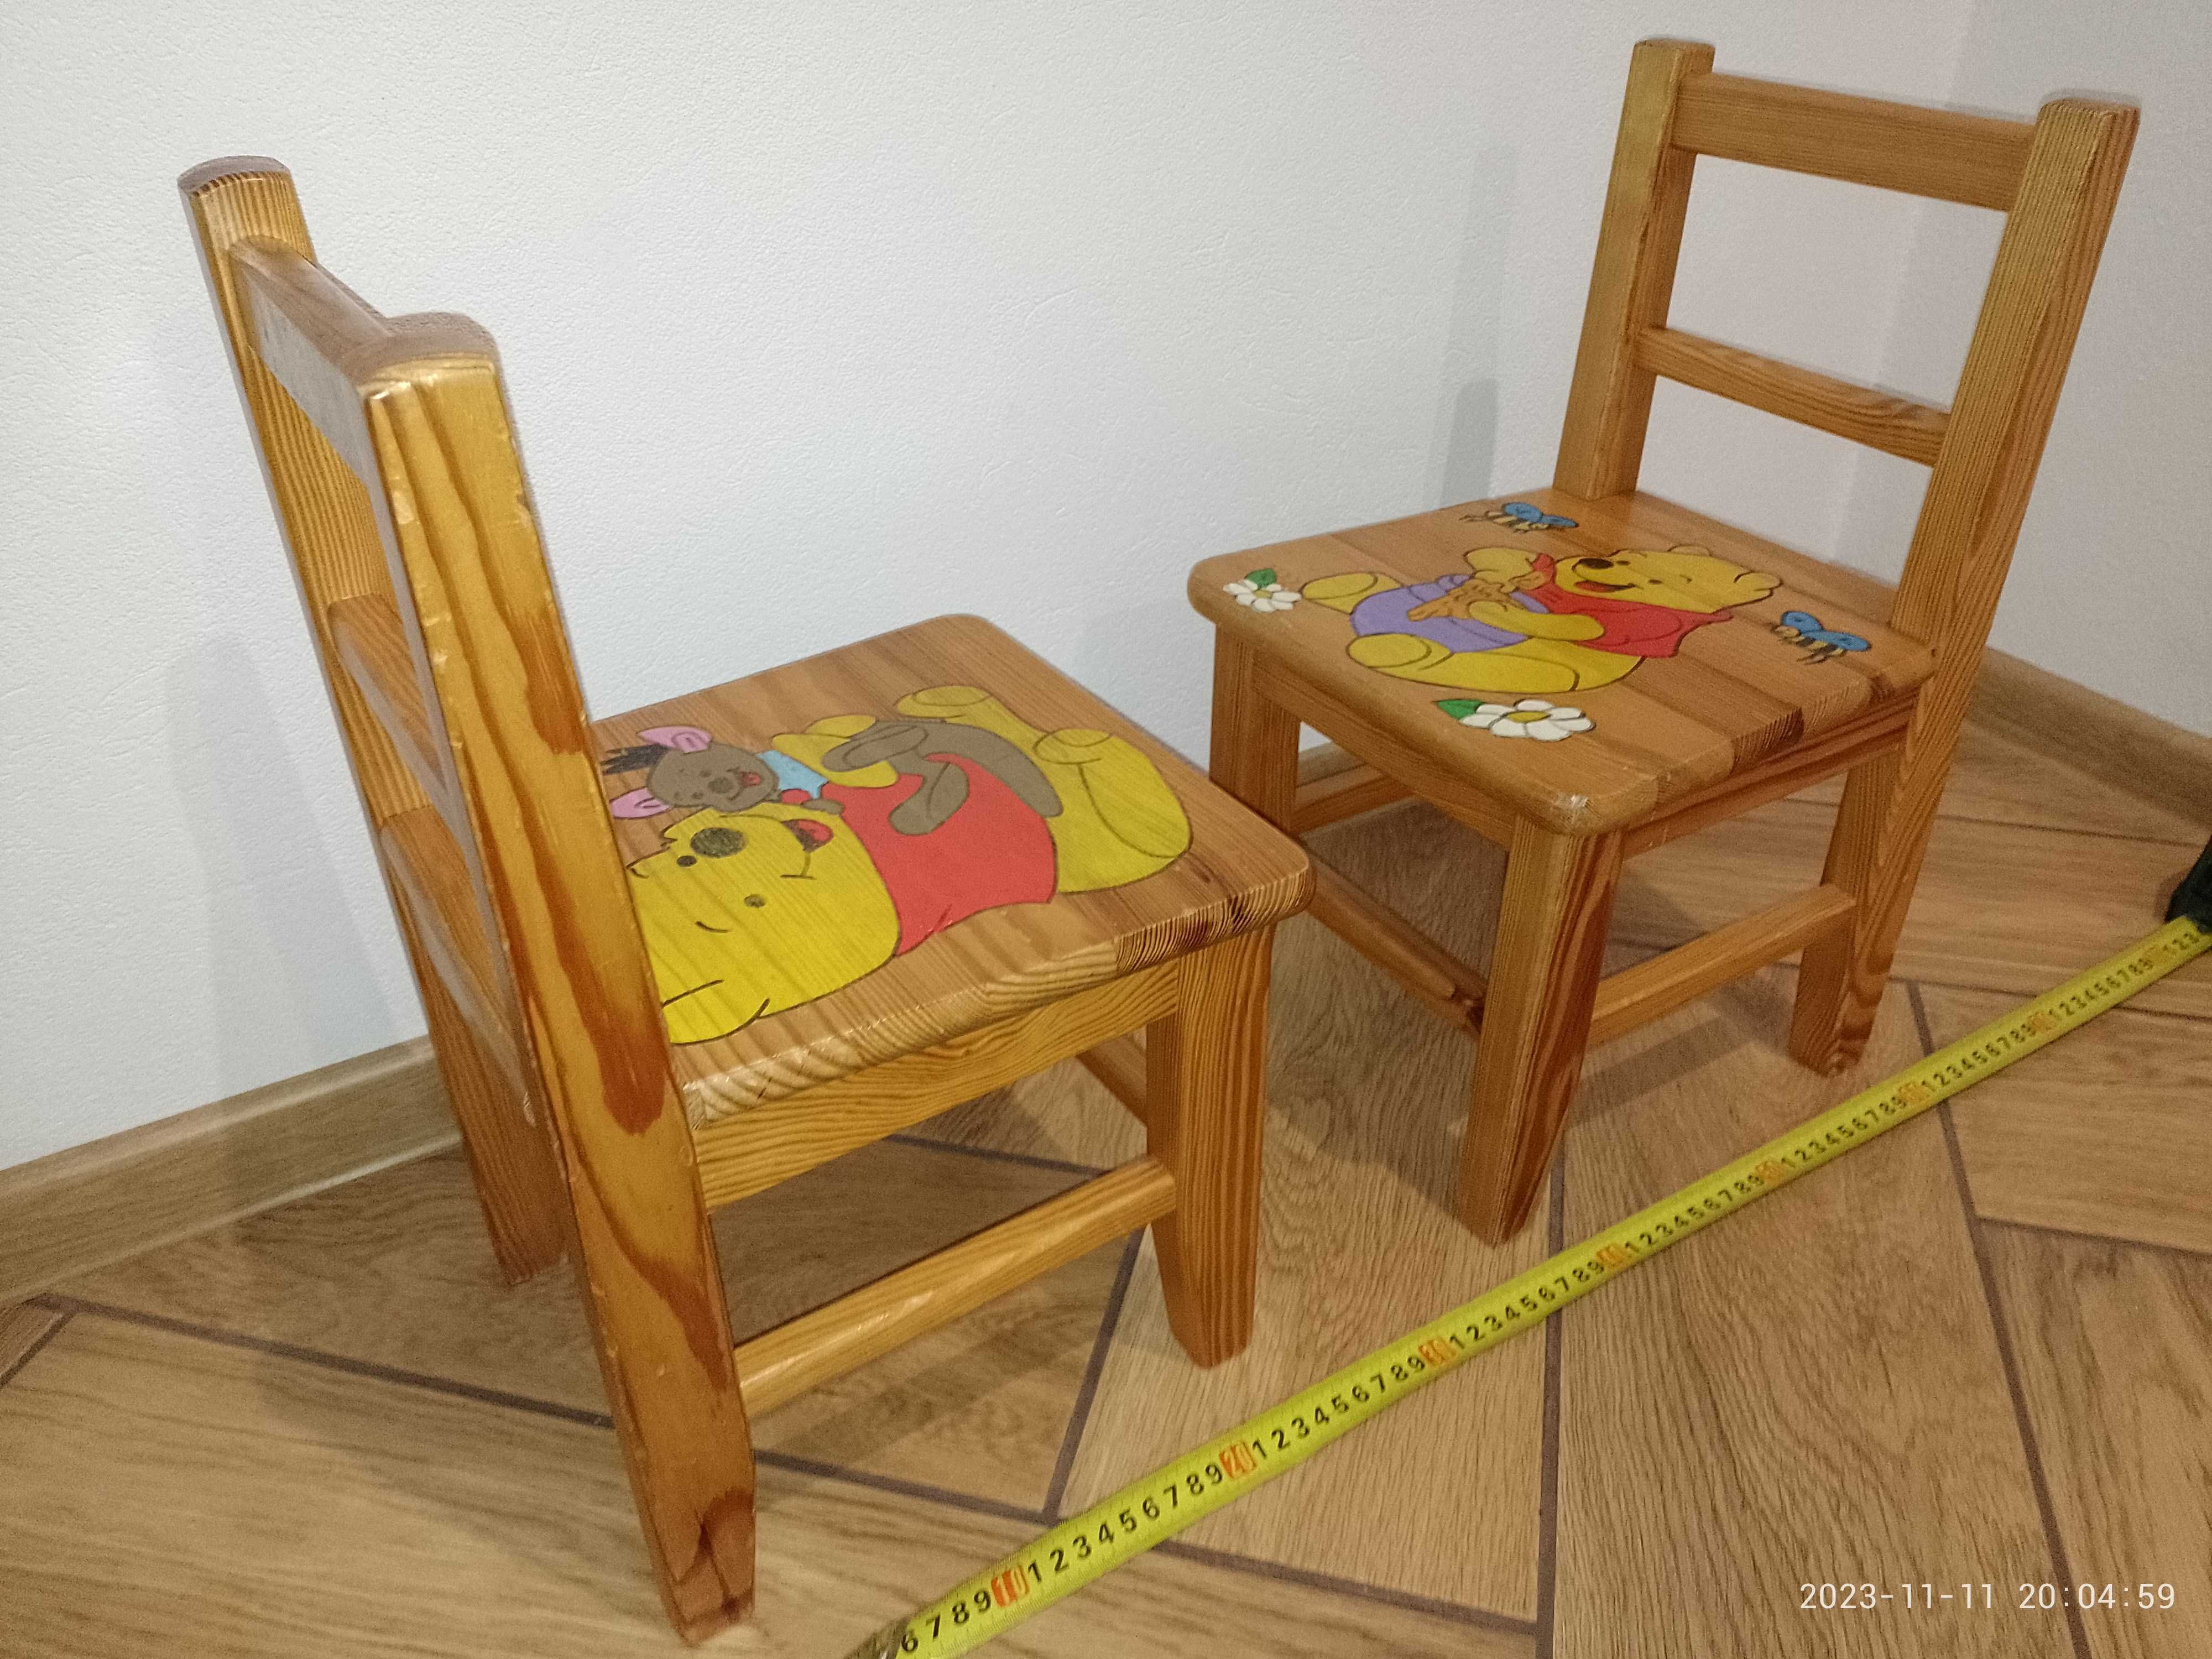 Krzesła dla dzieci - motyw Kubuś Puchatek - 2 krzesełka drewniane